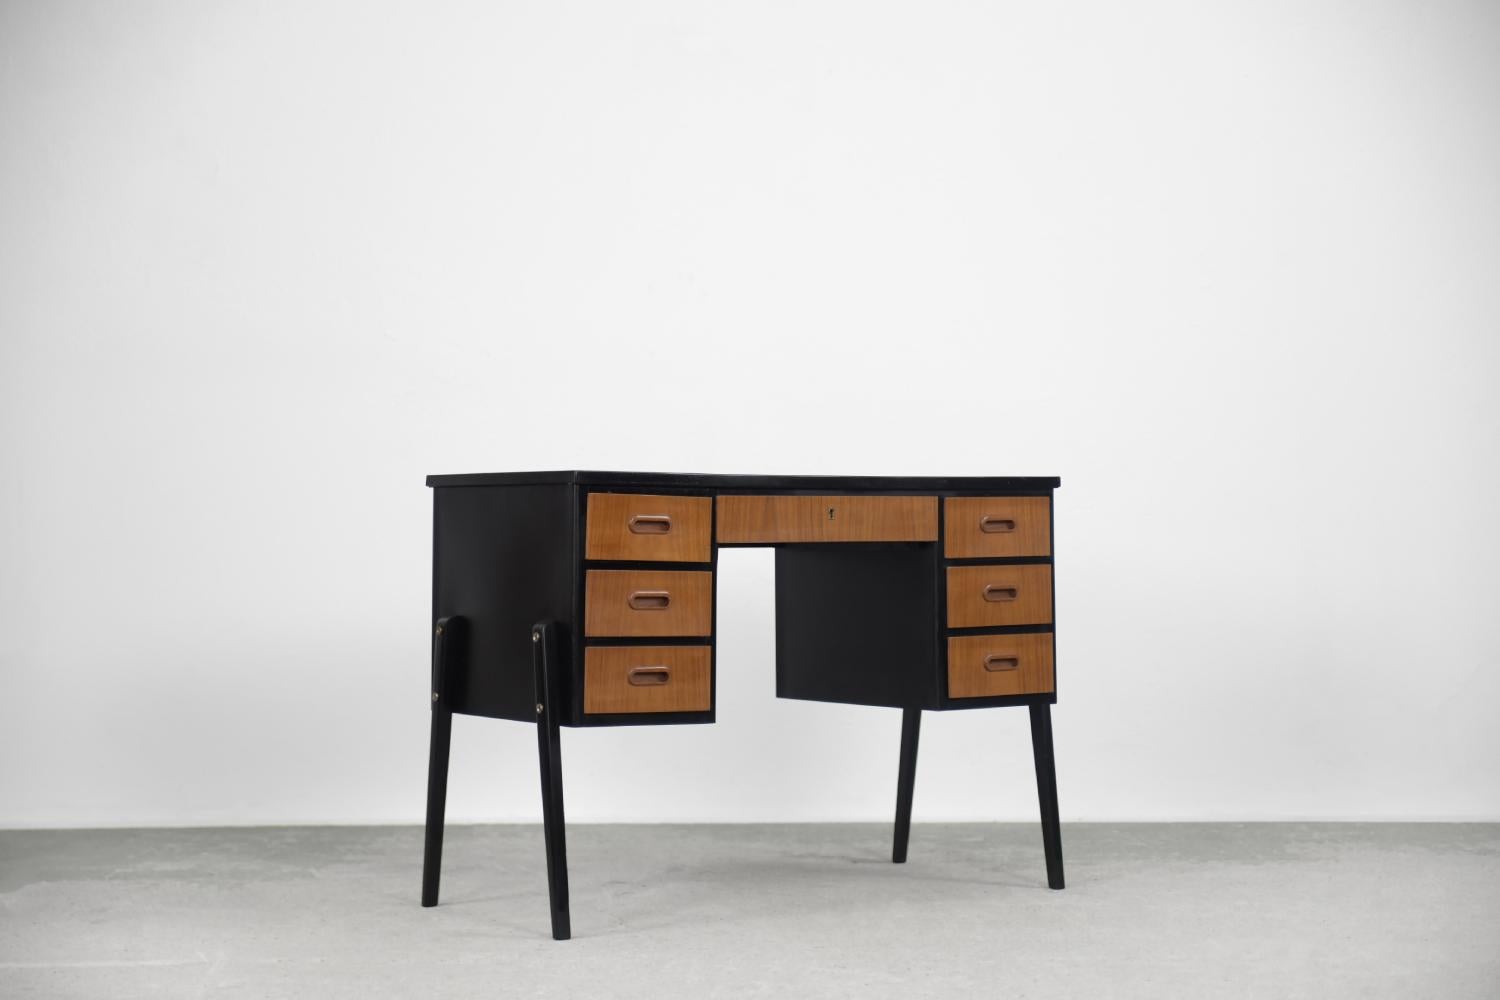 Dieser klassische Schreibtisch wurde in den 1960er Jahren in Schweden hergestellt. Er ist aus braun-goldenem Teakholz mit schwarzen Elementen gefertigt. Teakholz ist sehr langlebig und stammt von vier Arten von Teakbäumen. Der hohe Gehalt an